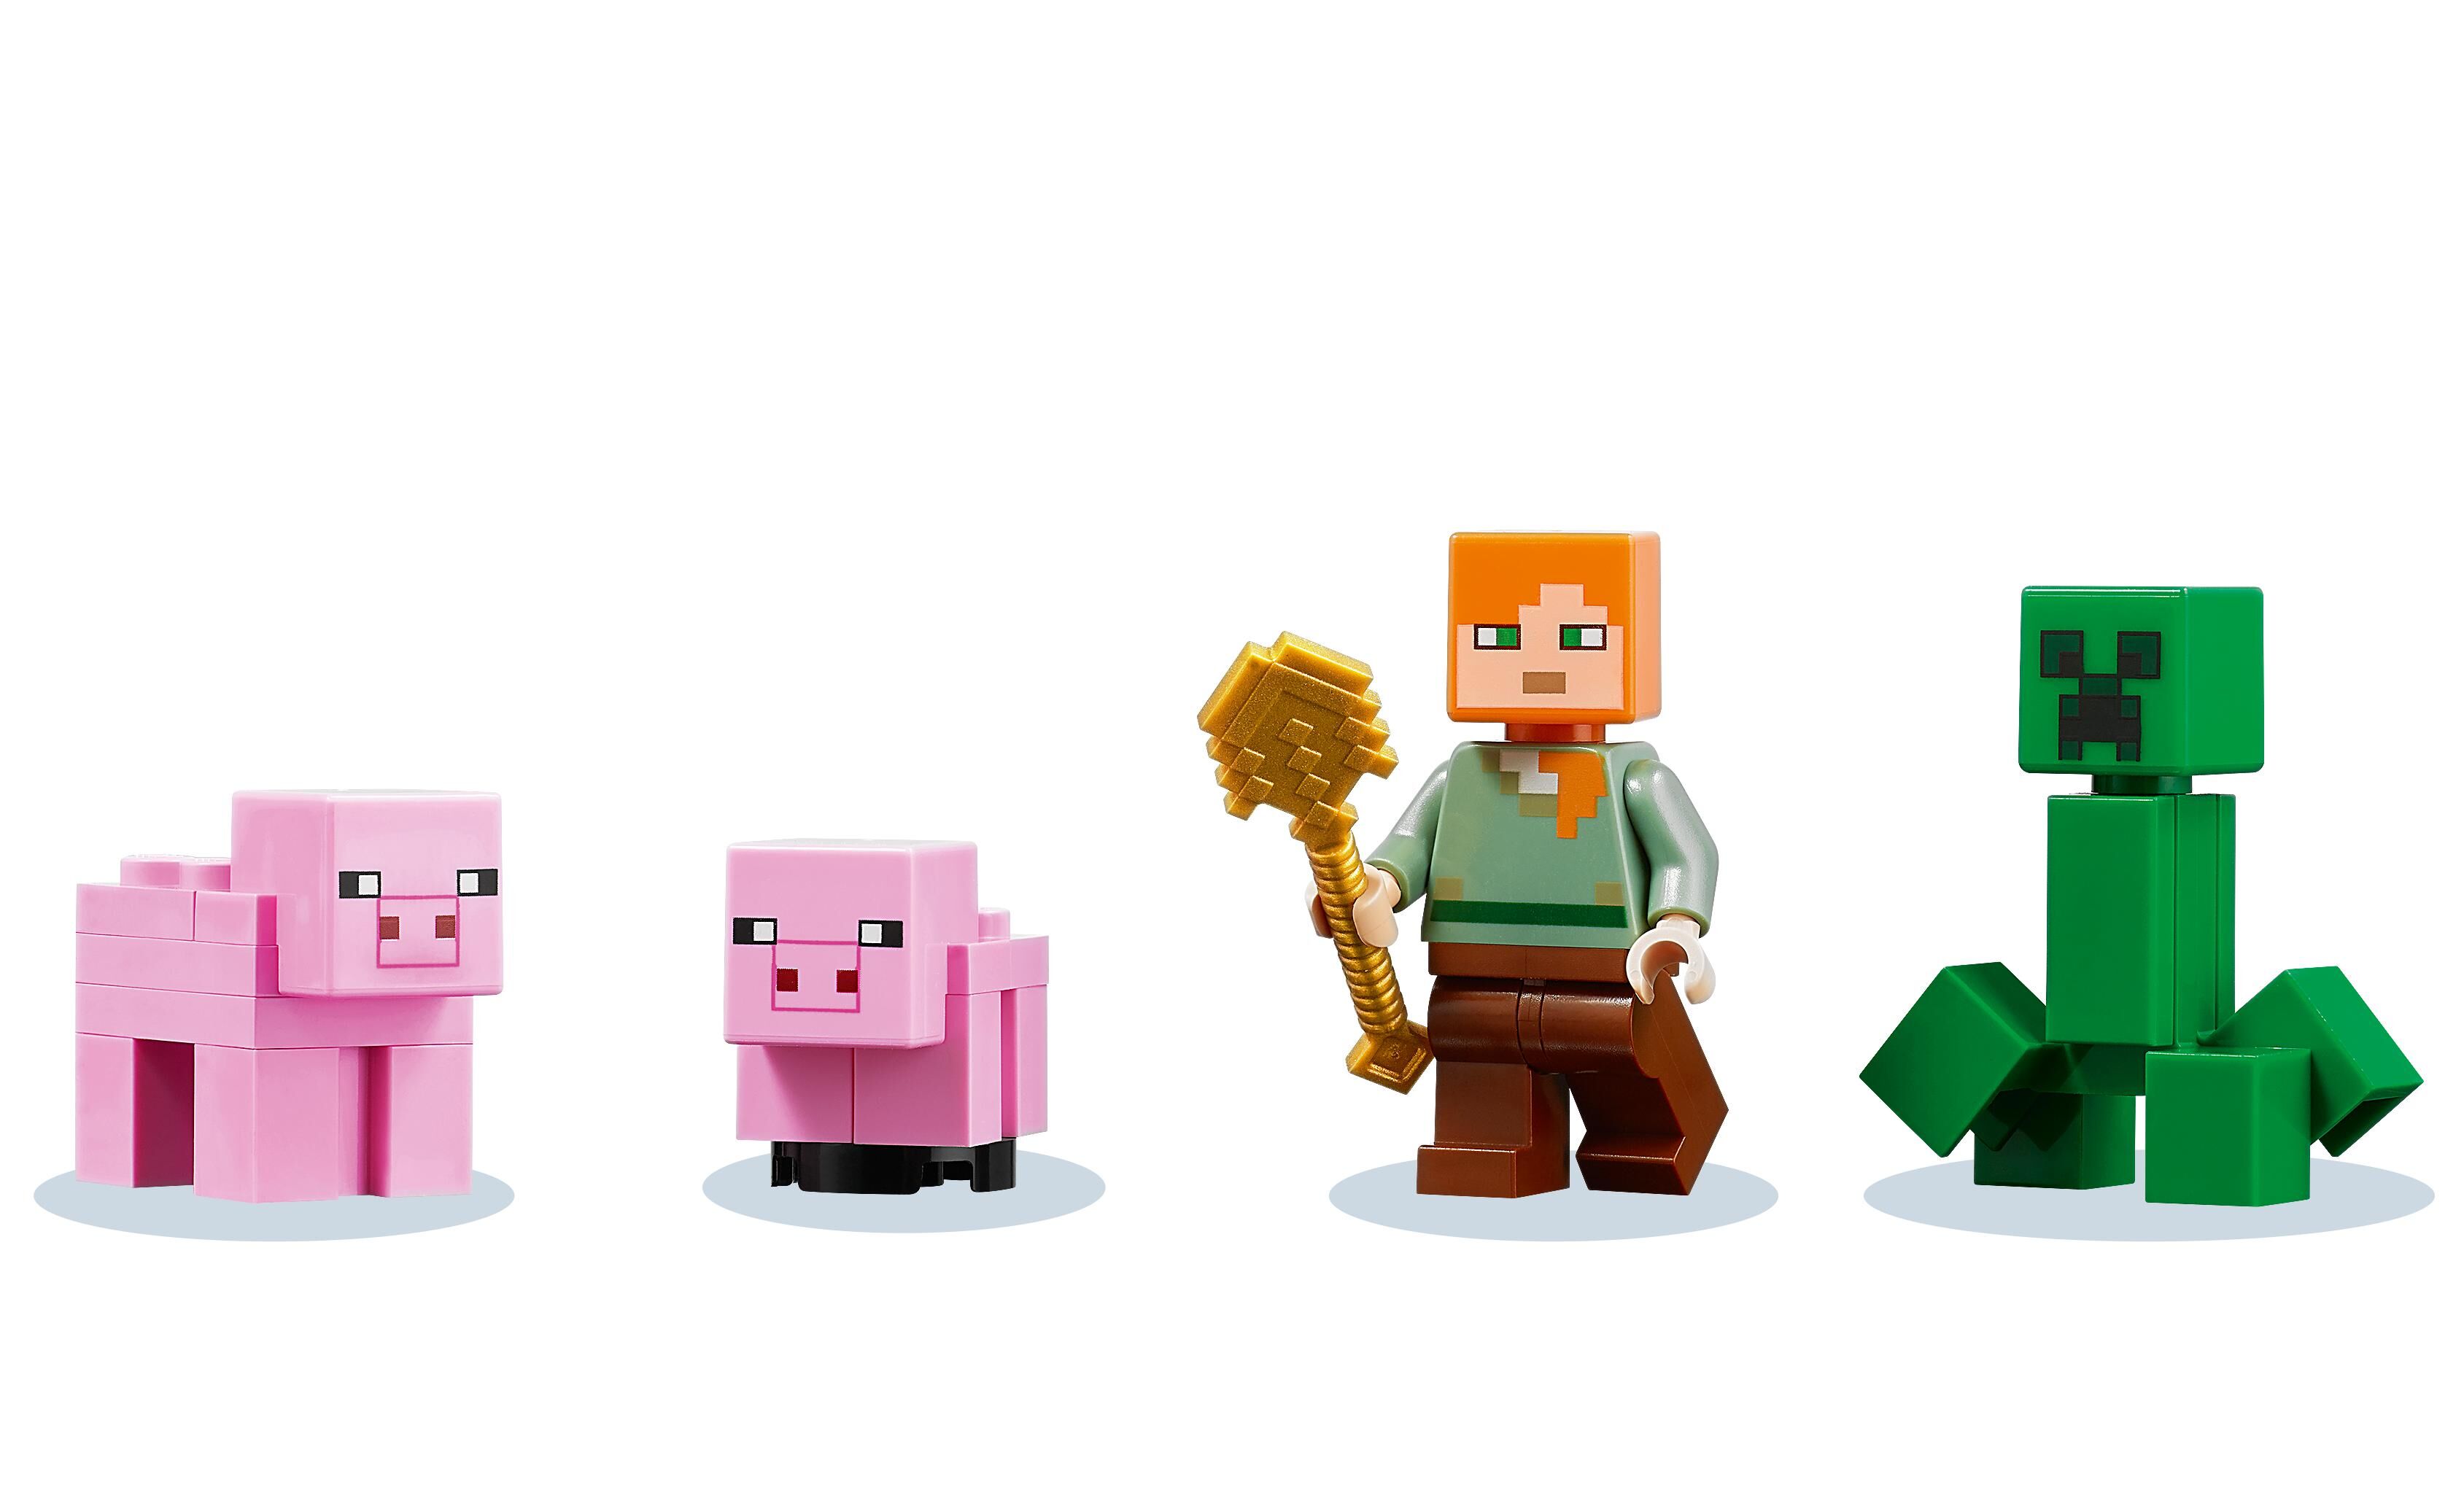 LEGO® Minecraft™ - La Maison Cochon - 21170 au meilleur prix